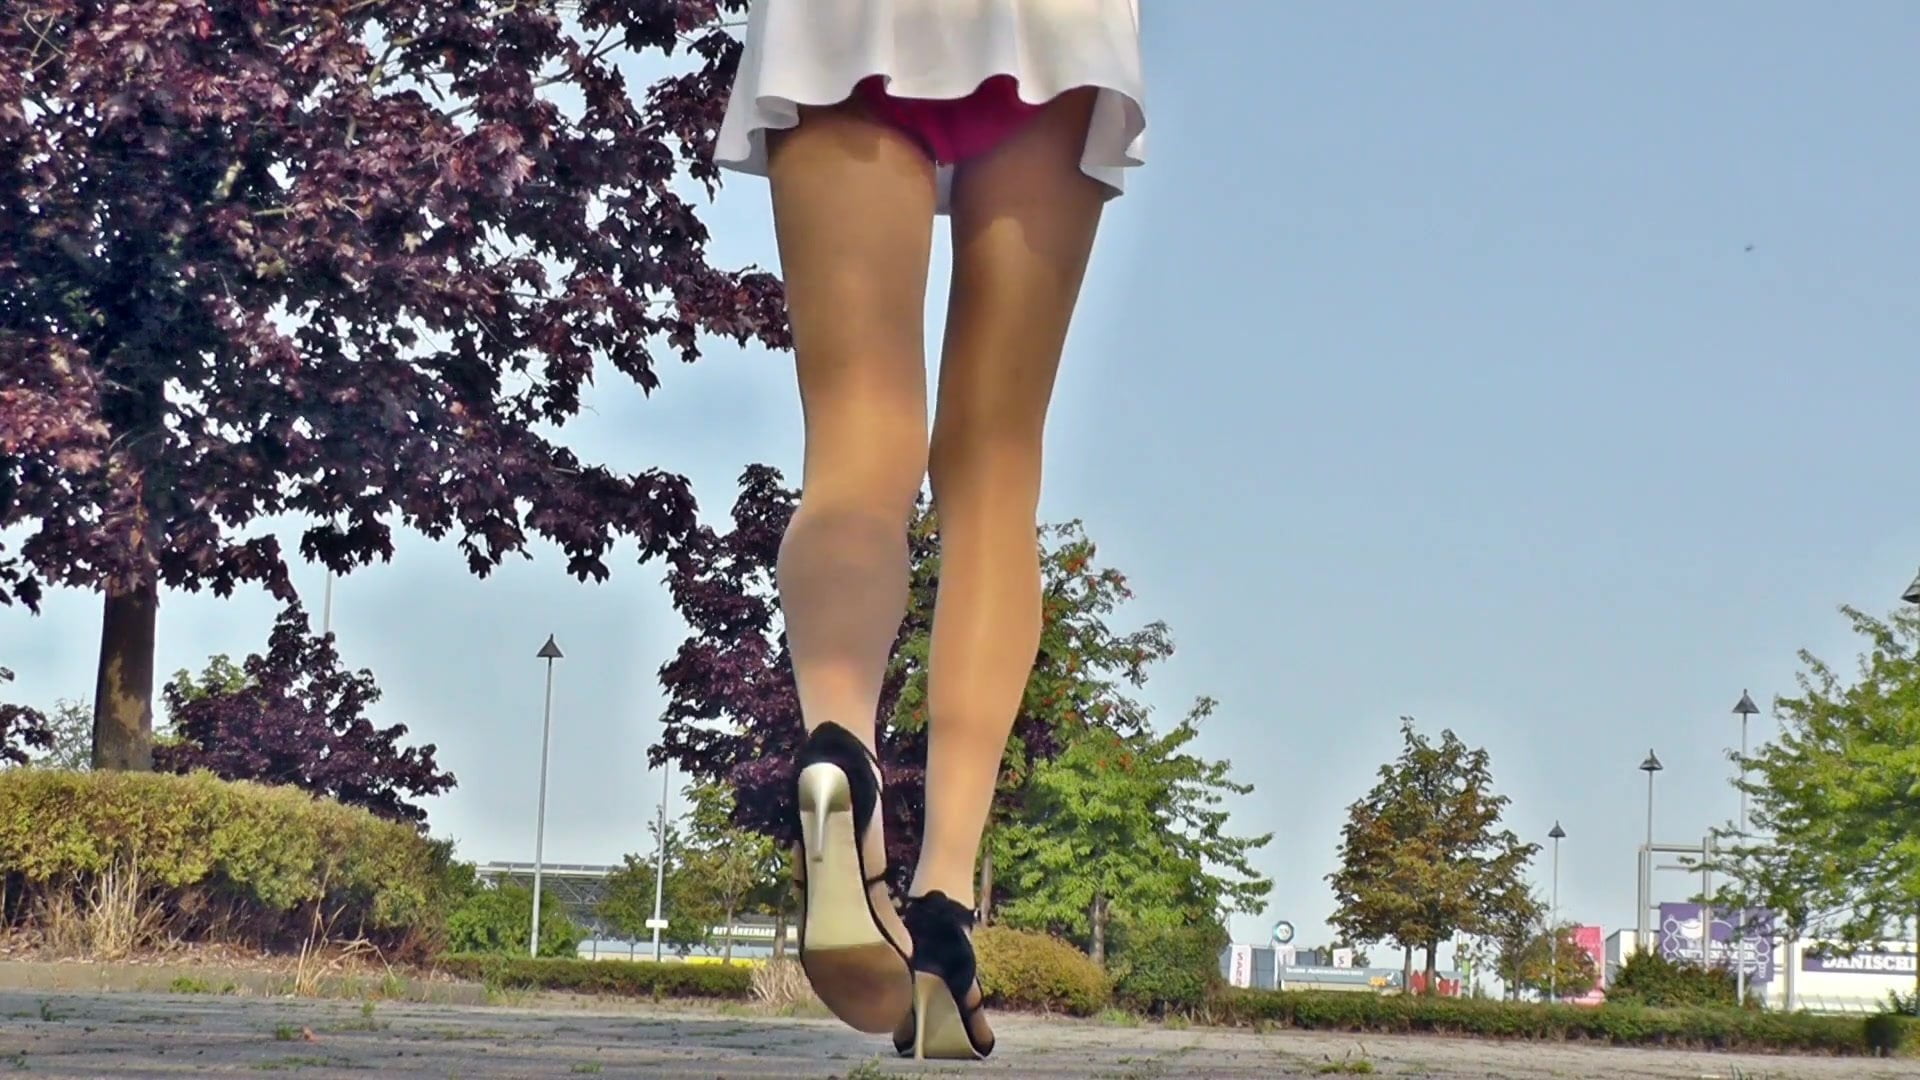 Tgirl Wears Very Short Skirt In Public Crossdresser XHamst